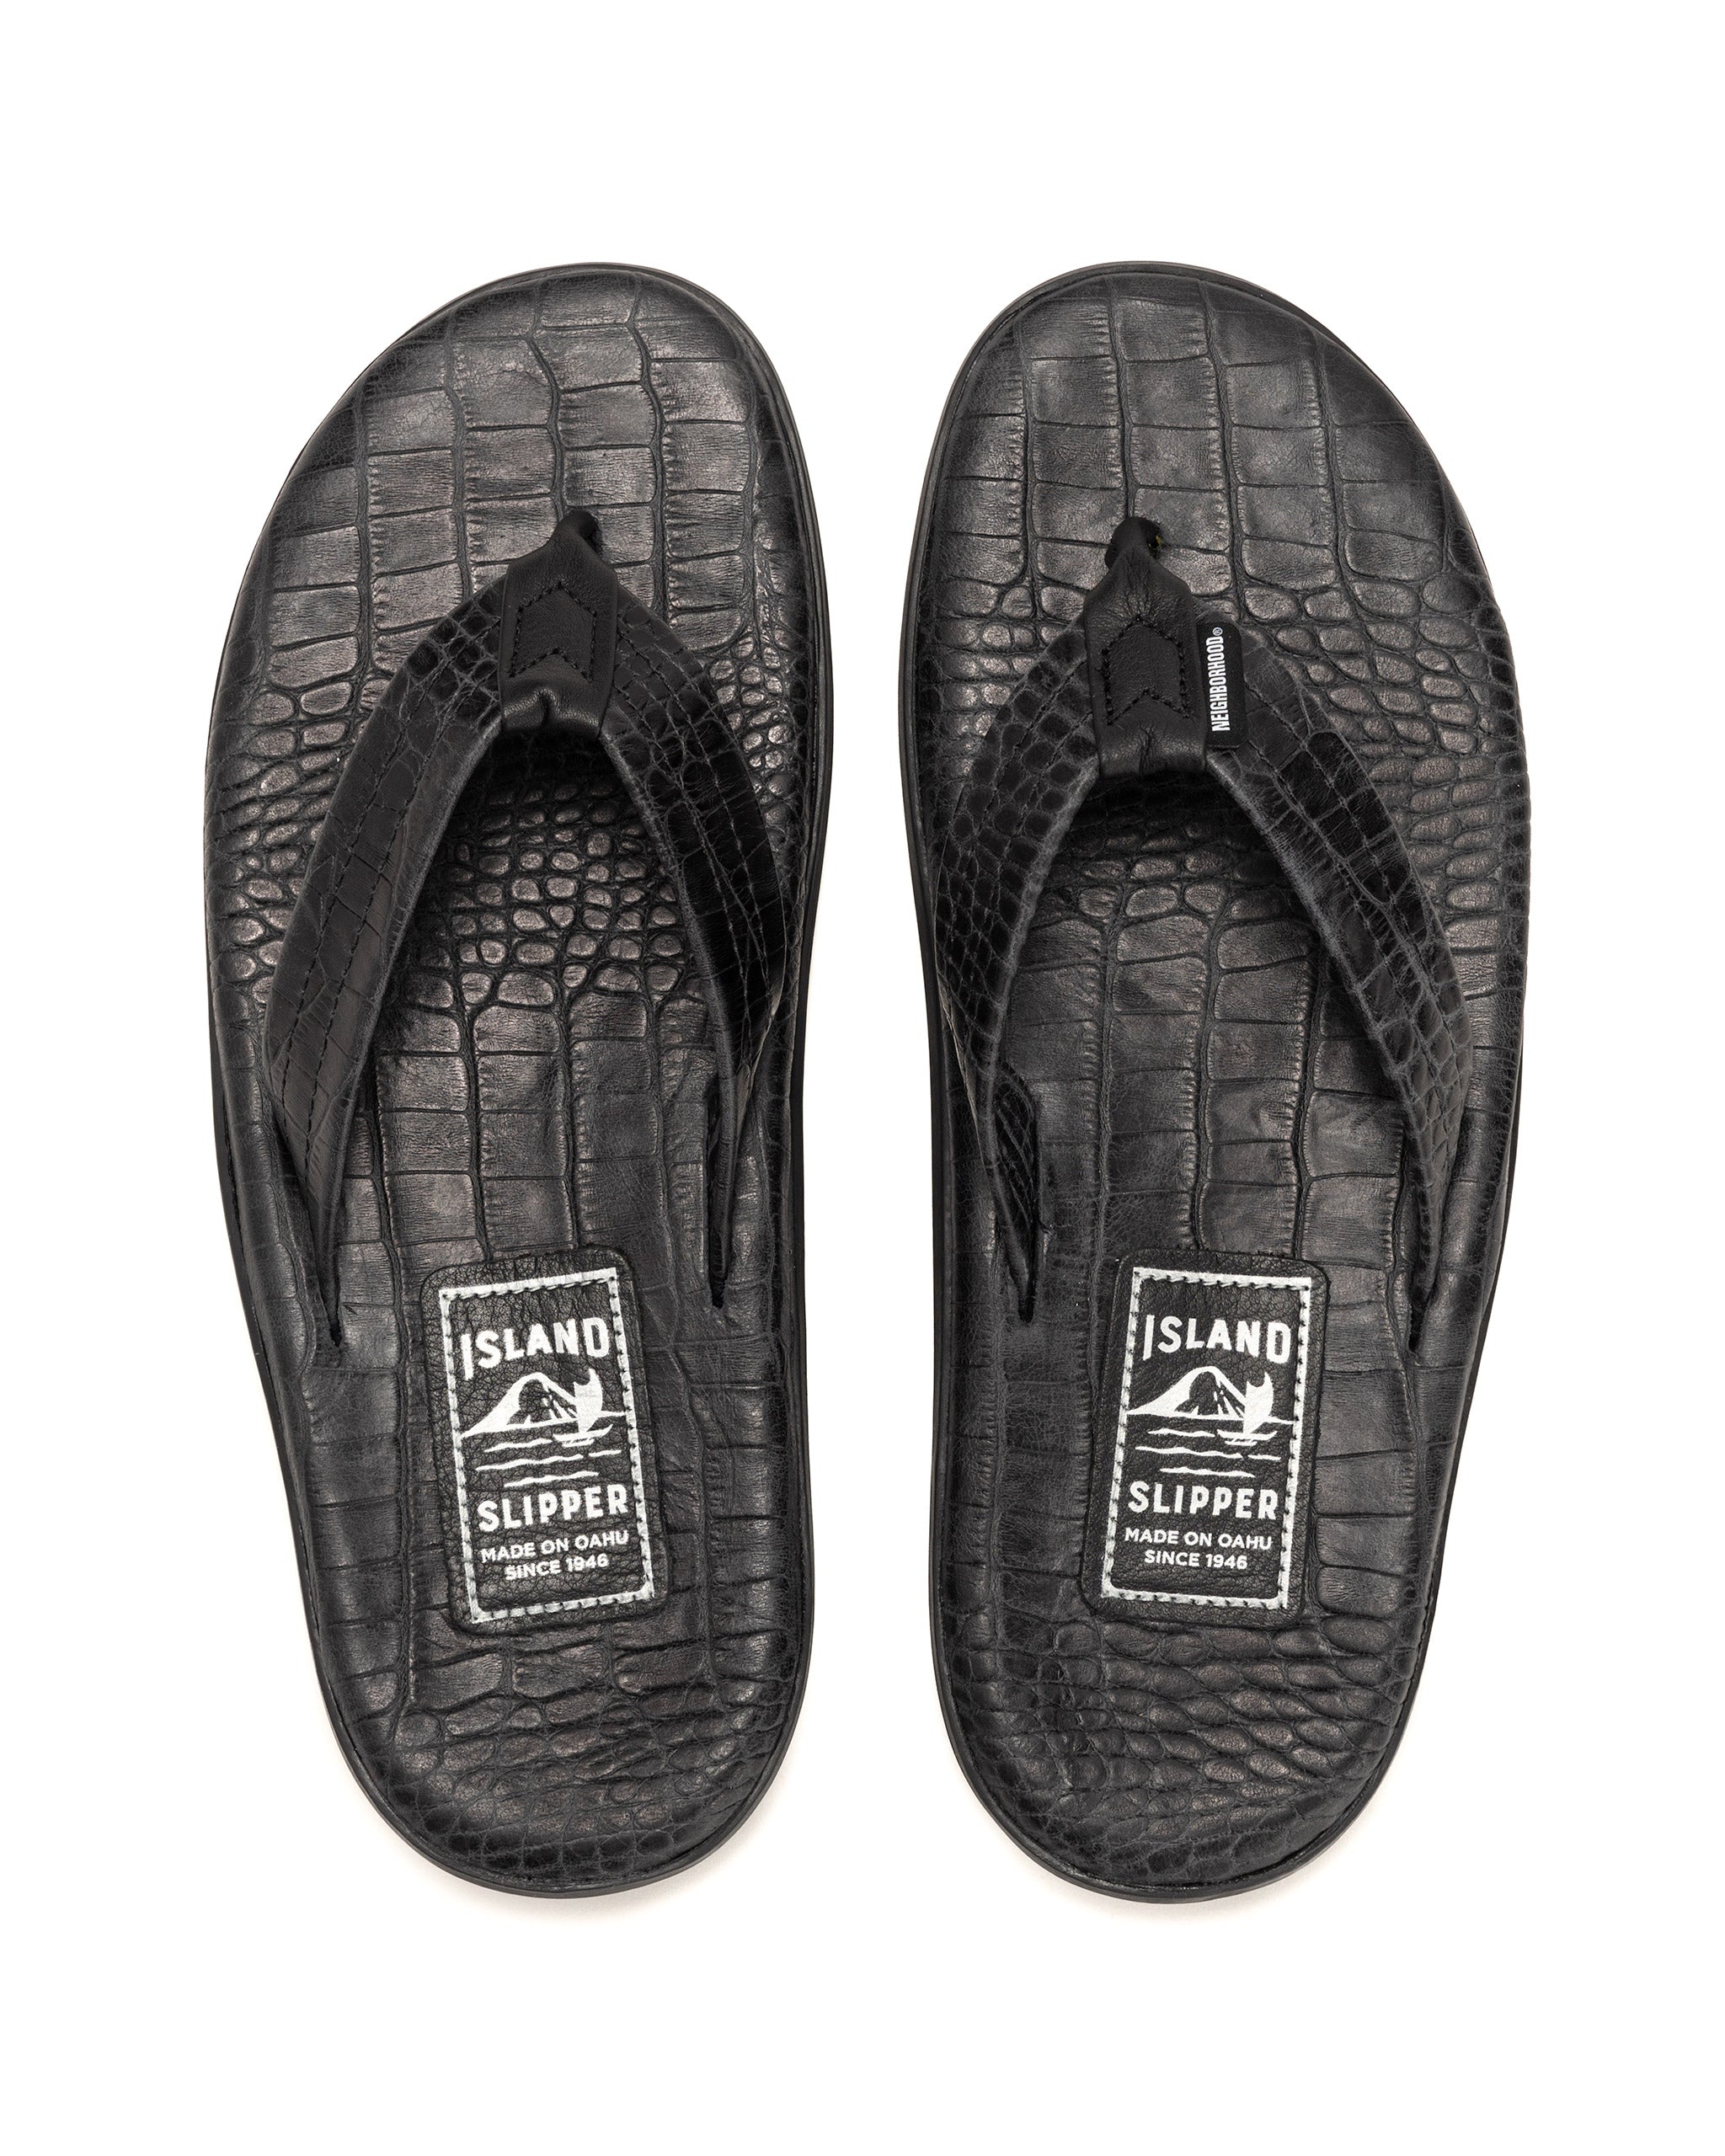 Nh x Island Slipper . Leather Sandal Black